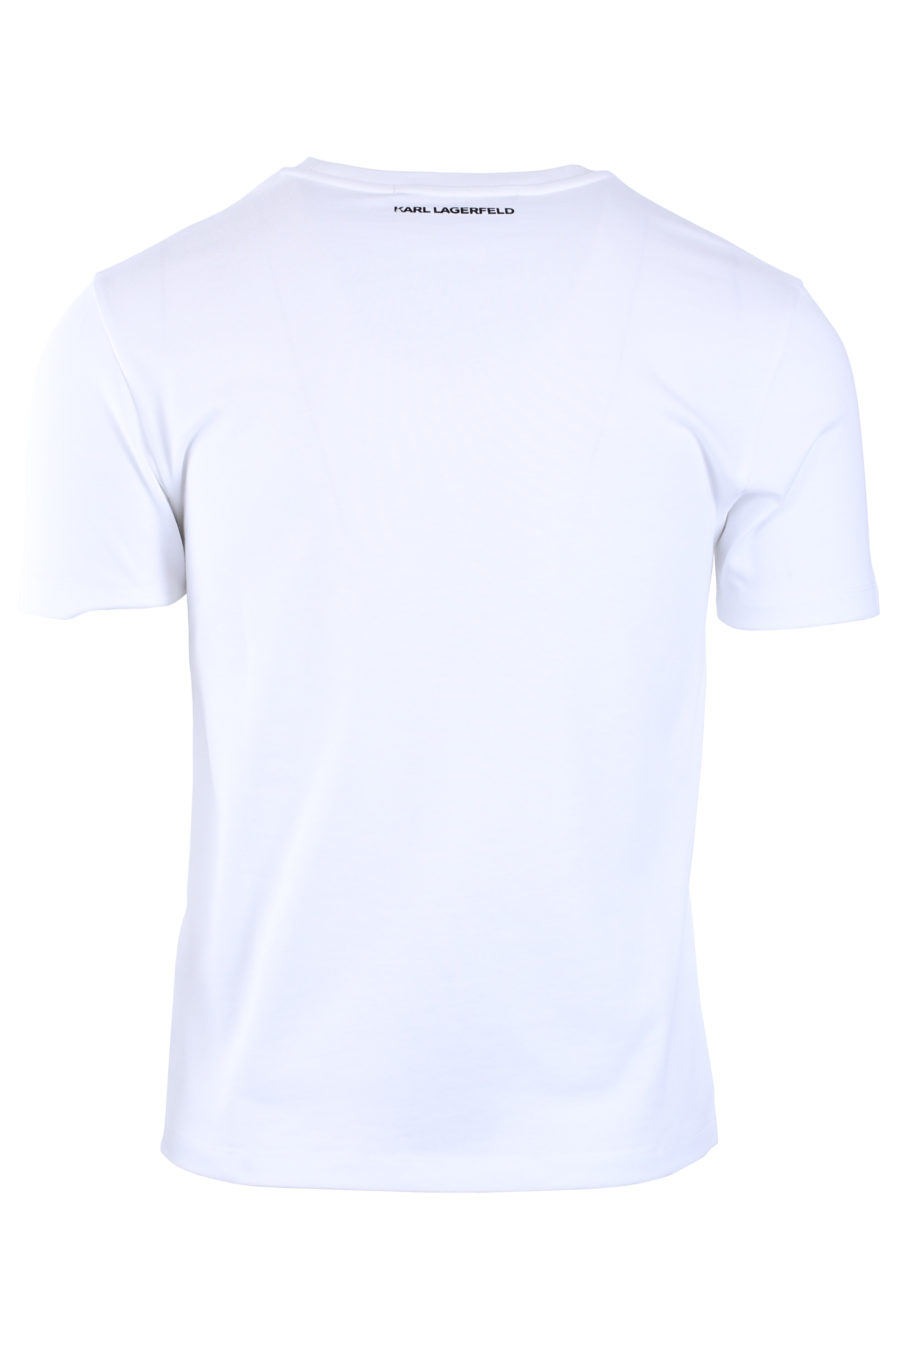 T-shirt unisexe blanc avec logo - IMG 9031